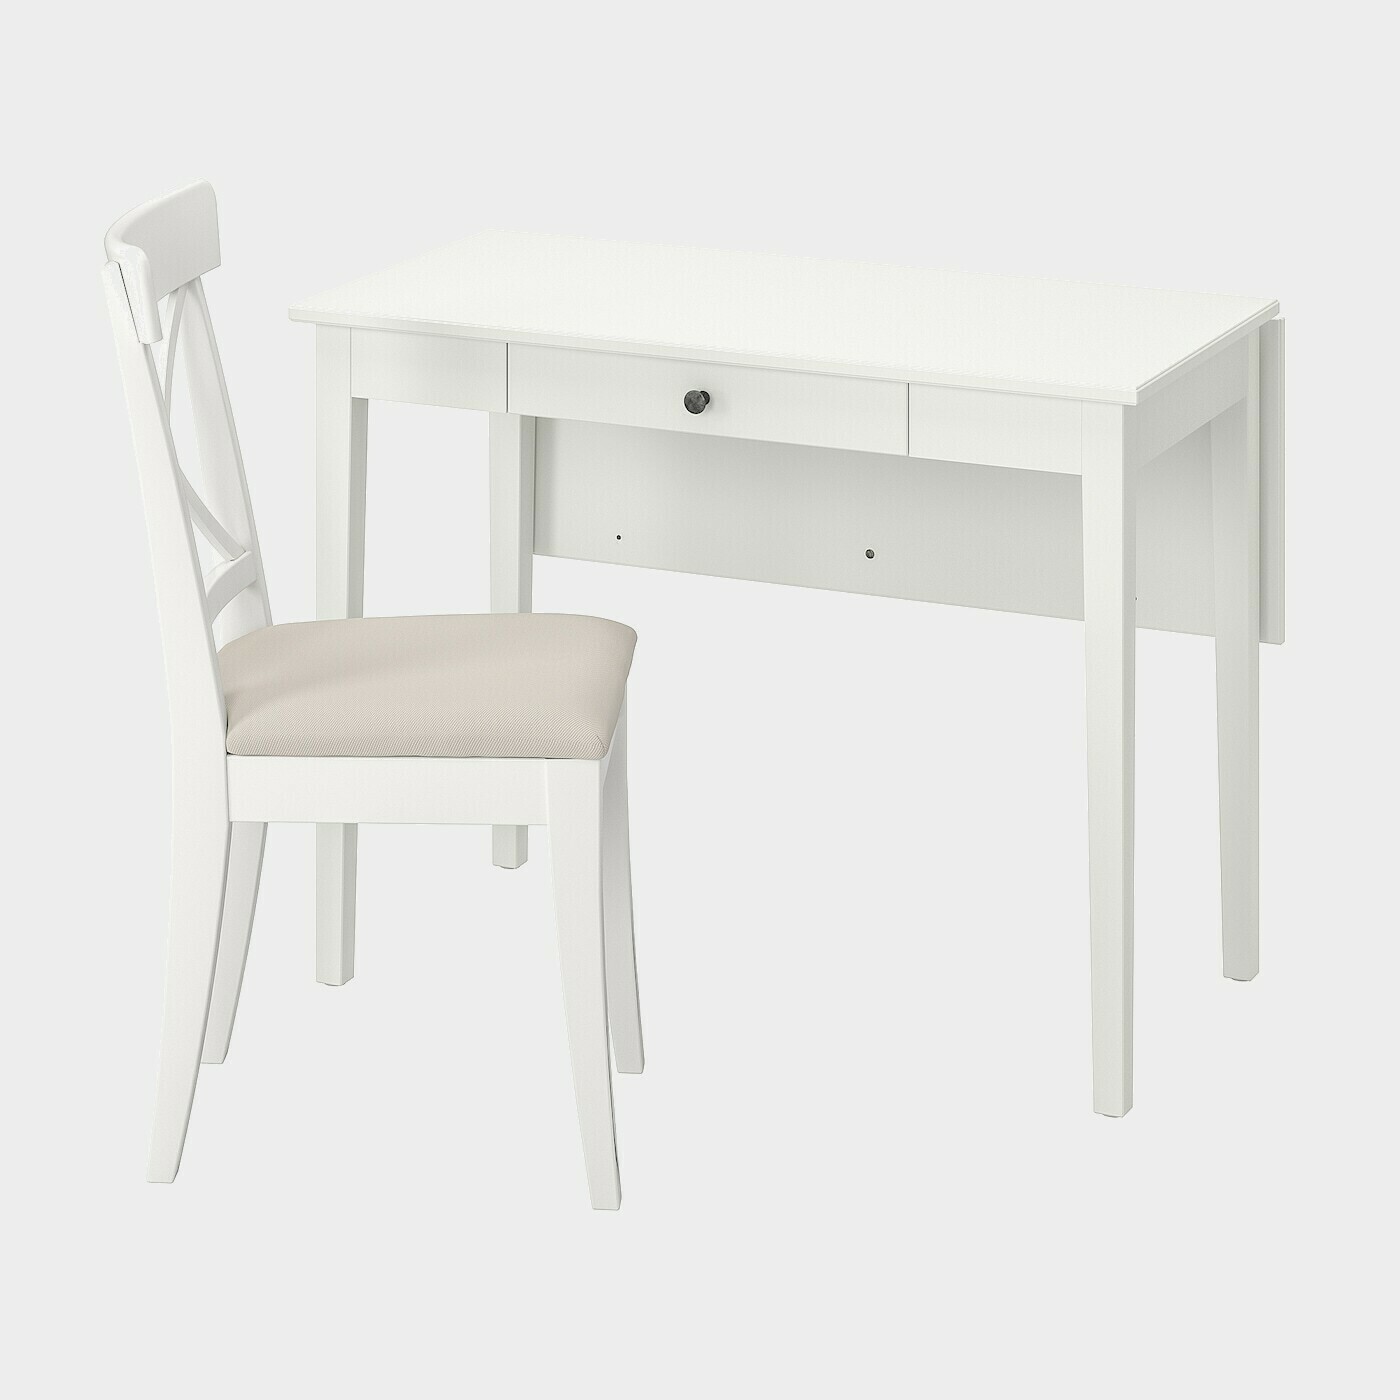 IDANÄS / INGOLF Tisch und Stuhl  -  - Möbel Ideen für dein Zuhause von Home Trends. Möbel Trends von Social Media Influencer für dein Skandi Zuhause.